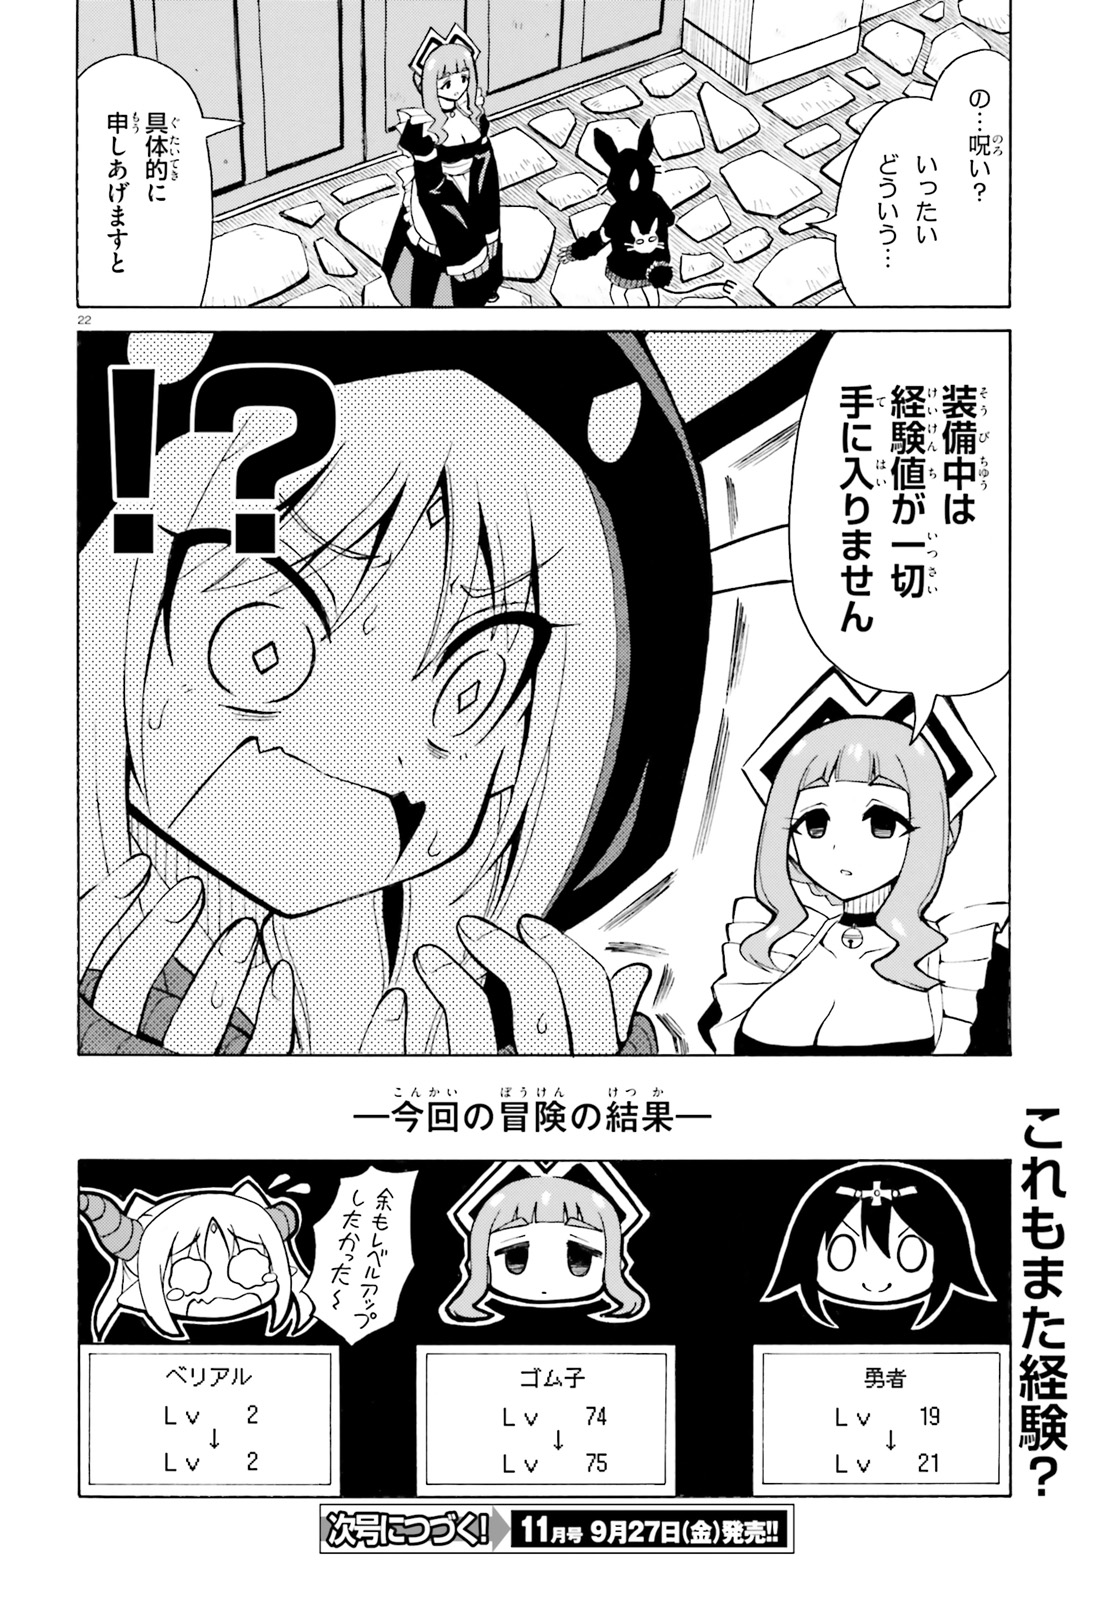 Beriaru-sama wa Shitenno no Naka Demo × × - Chapter 8 - Page 22